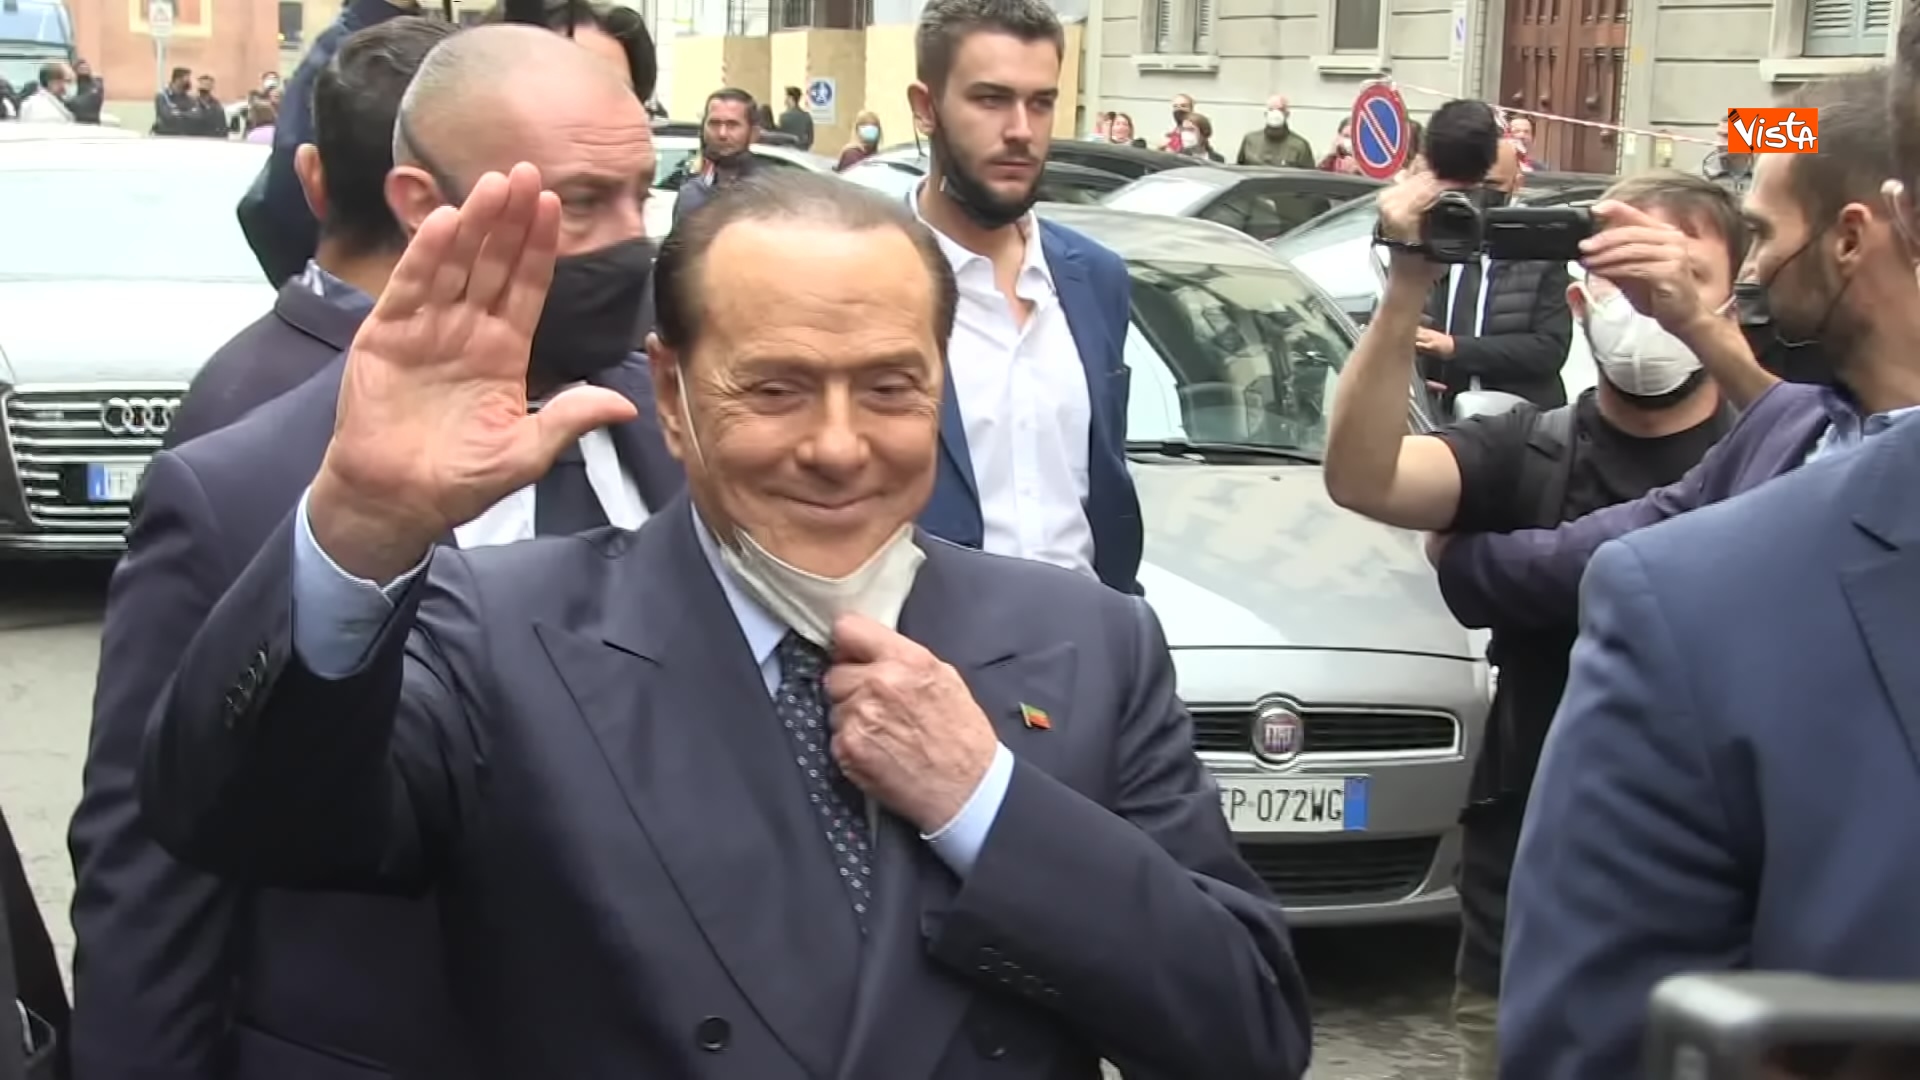 03-10-21 Silvio Berlusconi a Milano per votare alle amministrative Le immagini 01_021725329696103156742